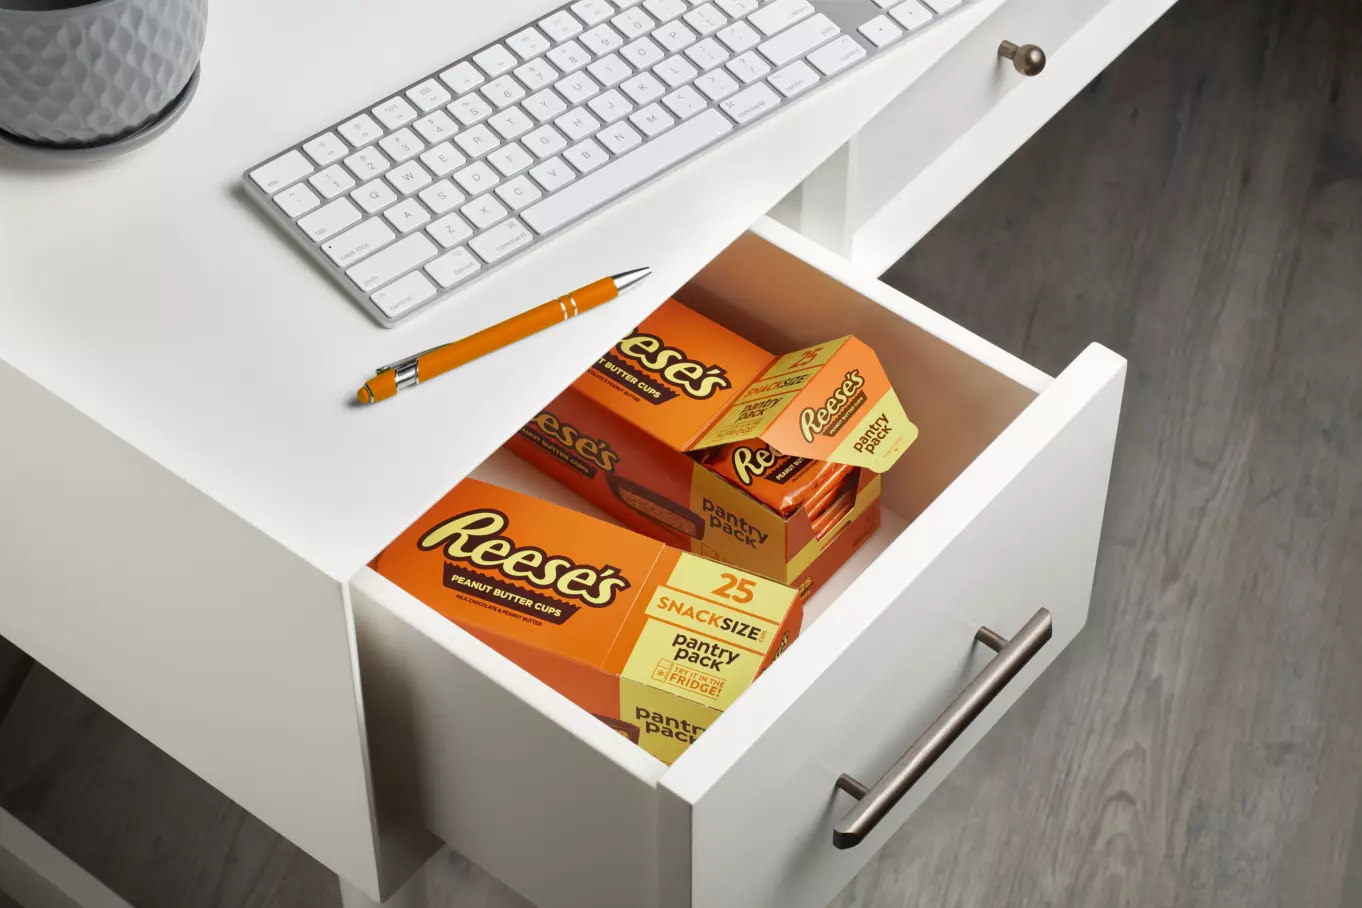 REESE'S Pantry Pack inside office desk drawer